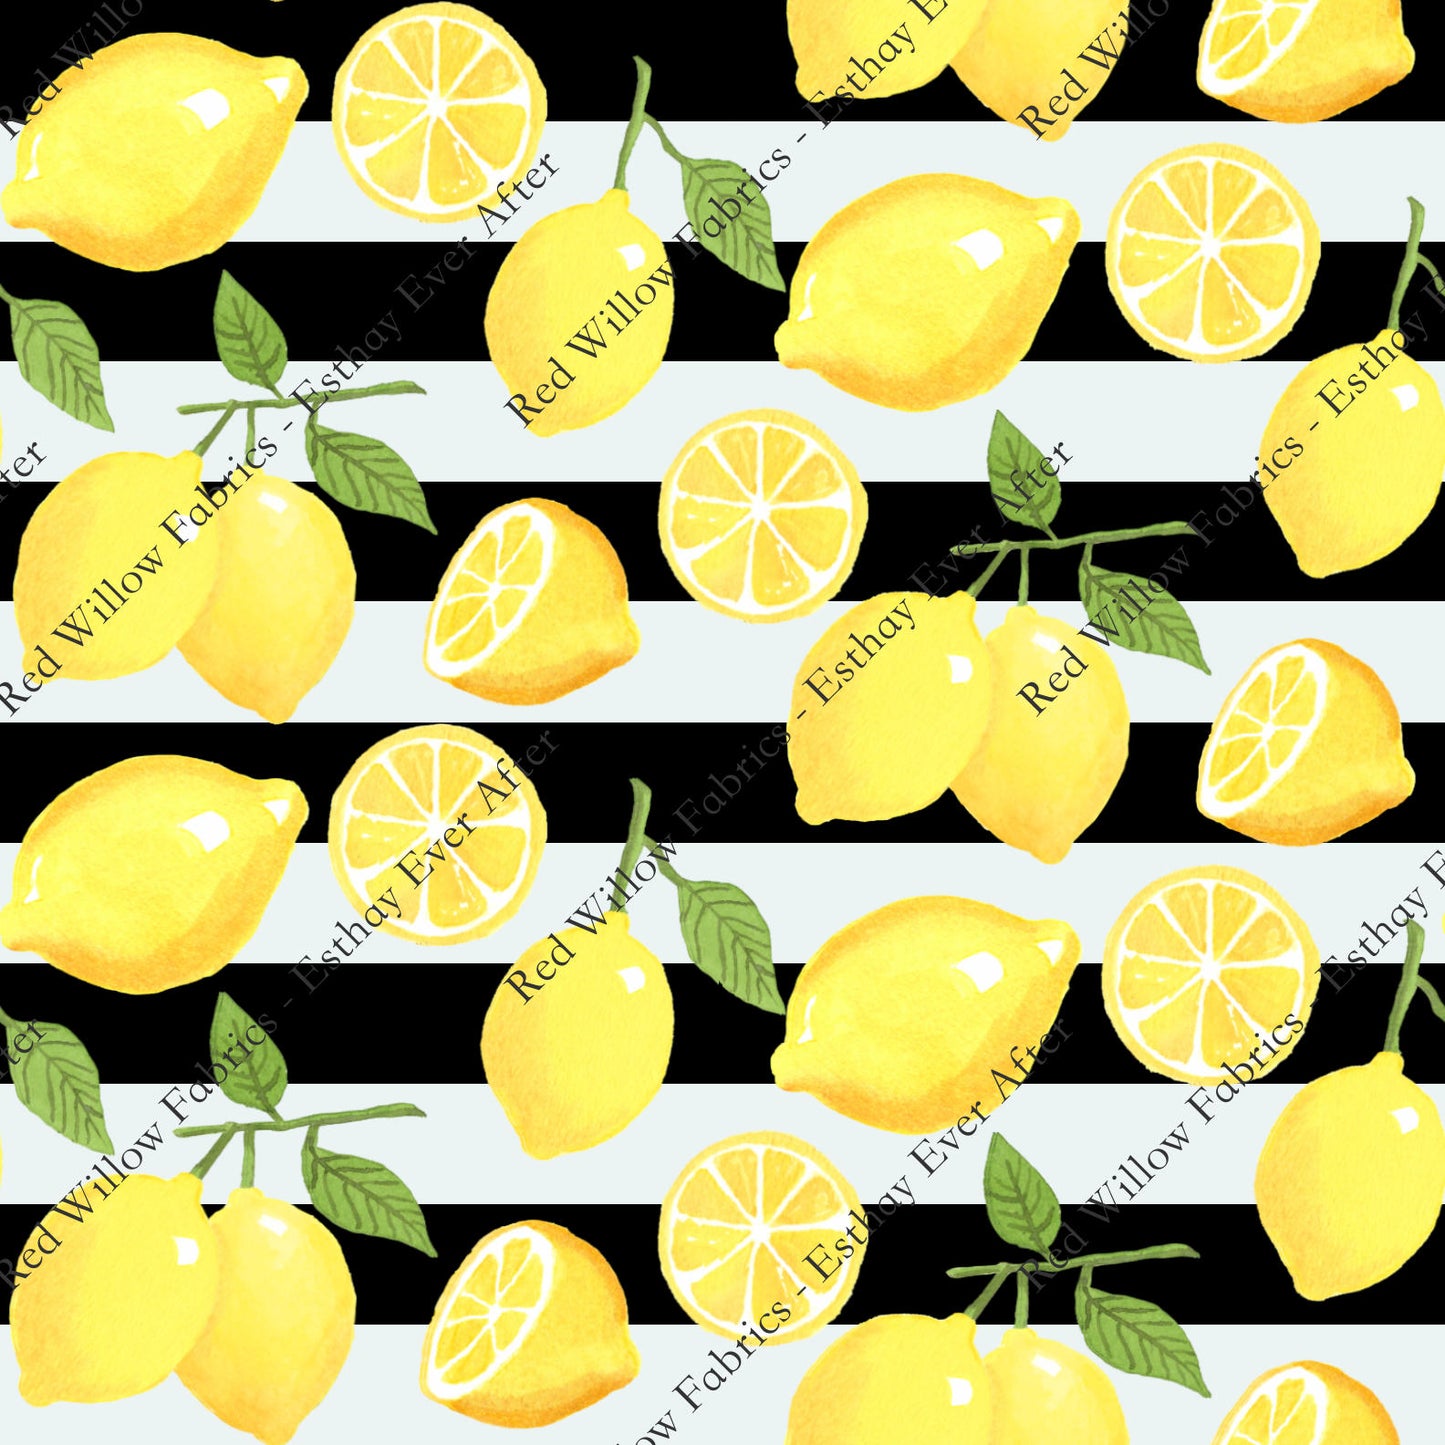 EEA - Lemon Stripes